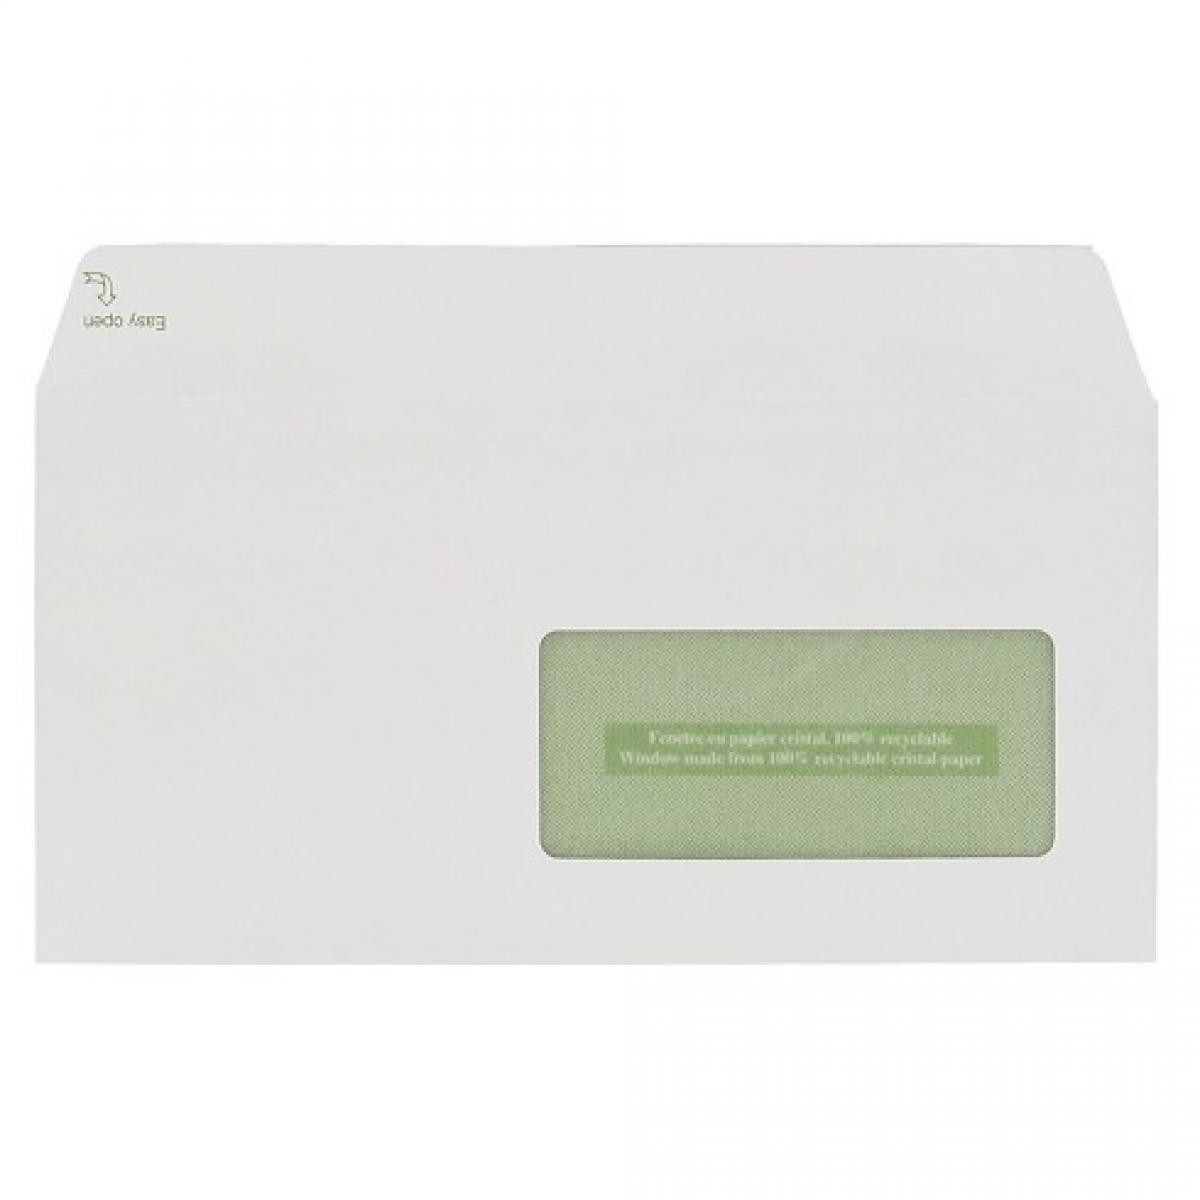 Gpvpacknpost - Enveloppe GPV Erapure blanche 110 x 220 mm - format DL - avec fenêtre 45 x 100 - Boîte de 500 - Accessoires Bureau